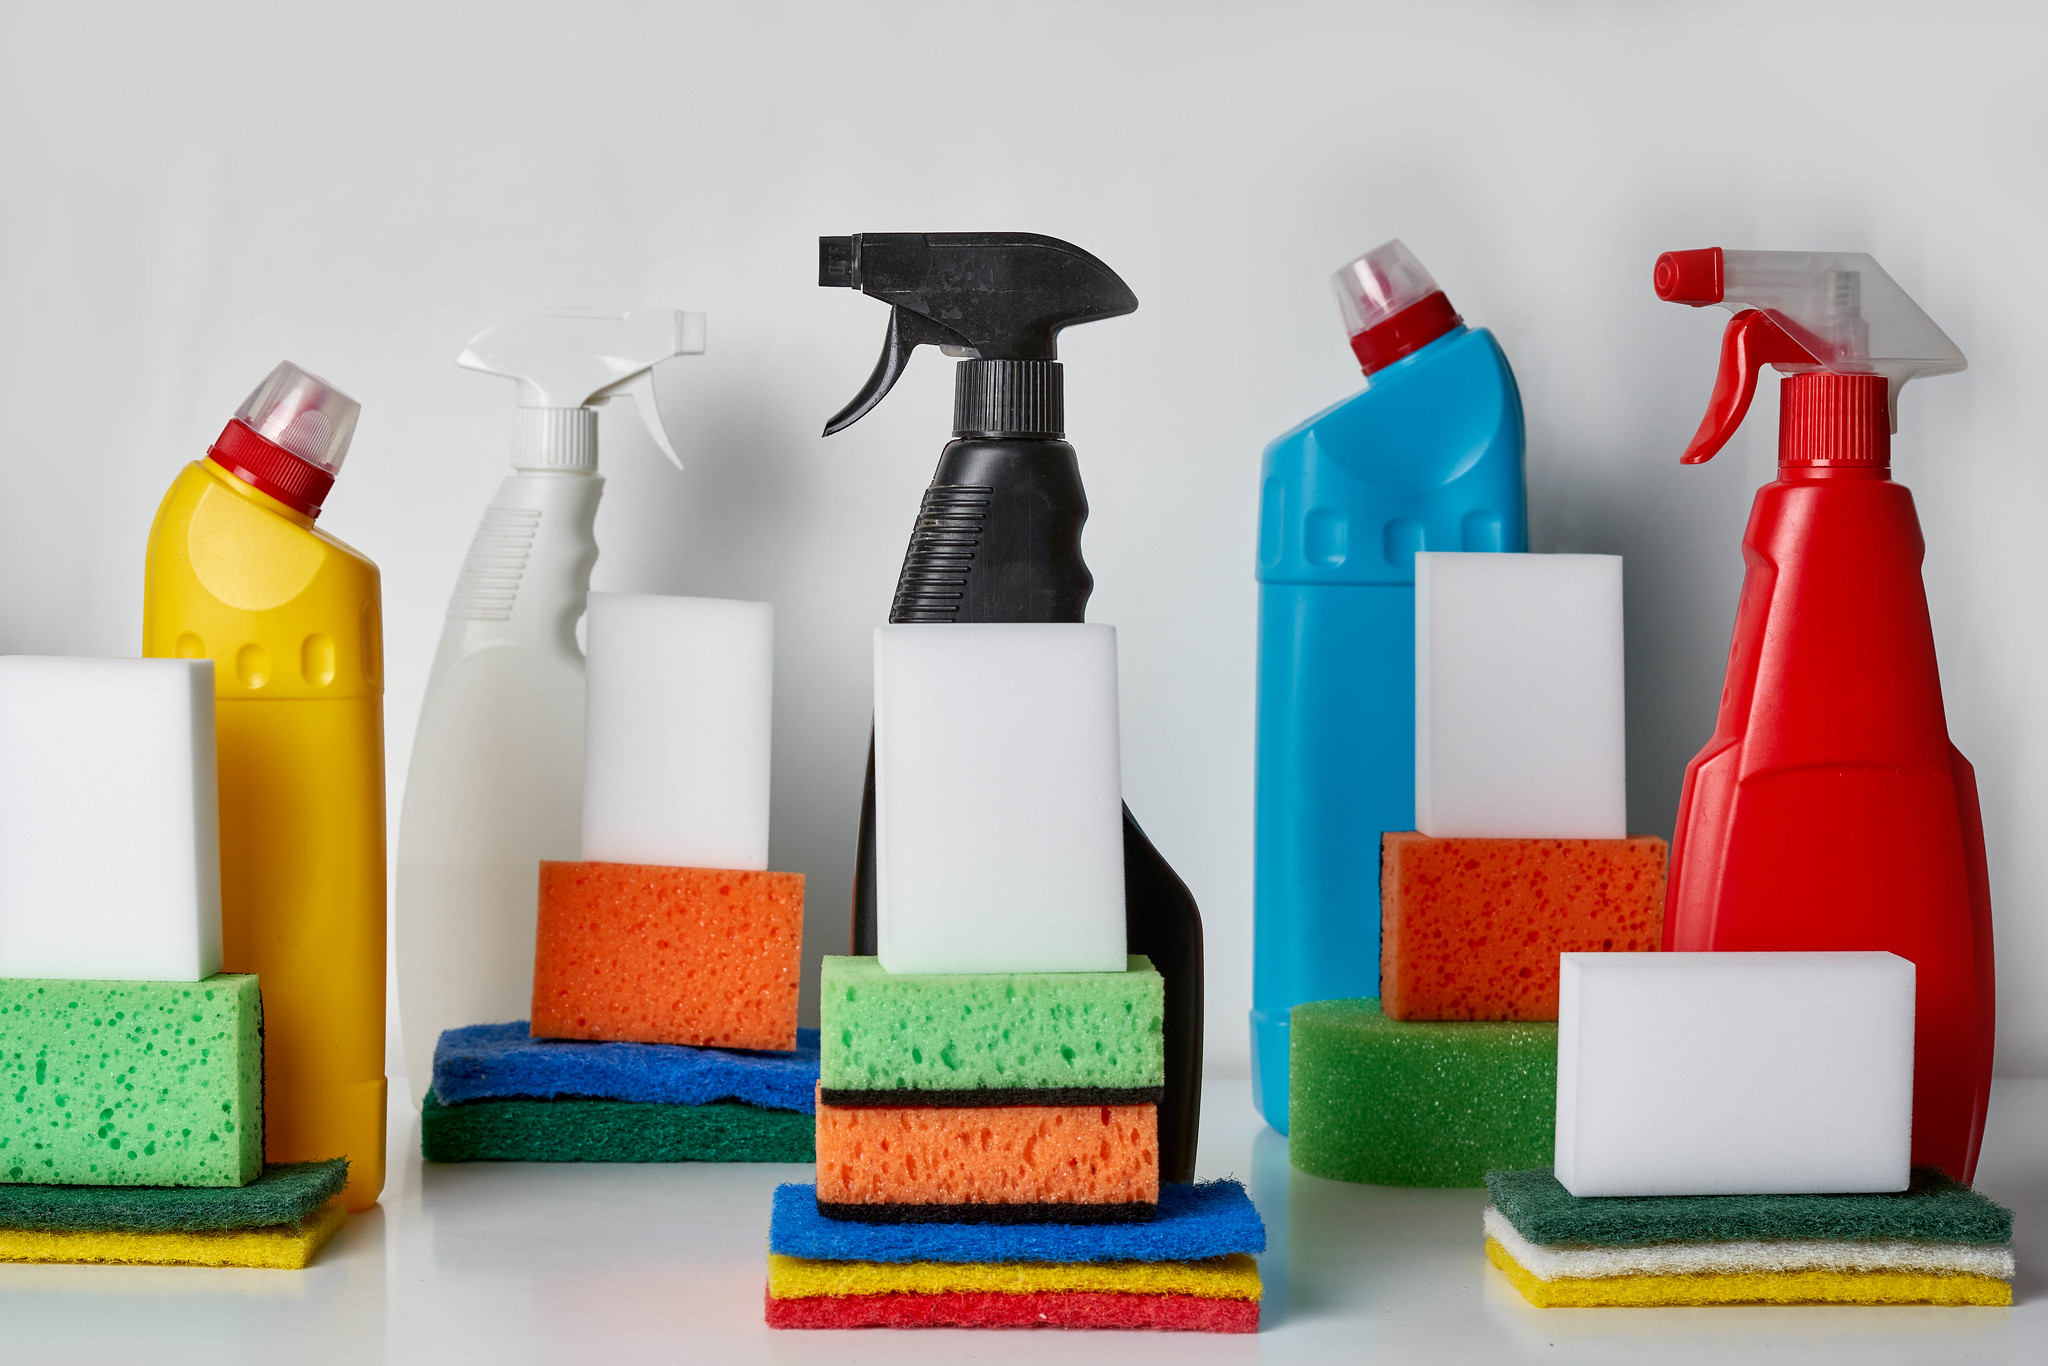 Λουσμένοι στα χημικά: Ποια κοινά προϊόντα δηλητηριάζουν σπίτια και εργασιακούς χώρους